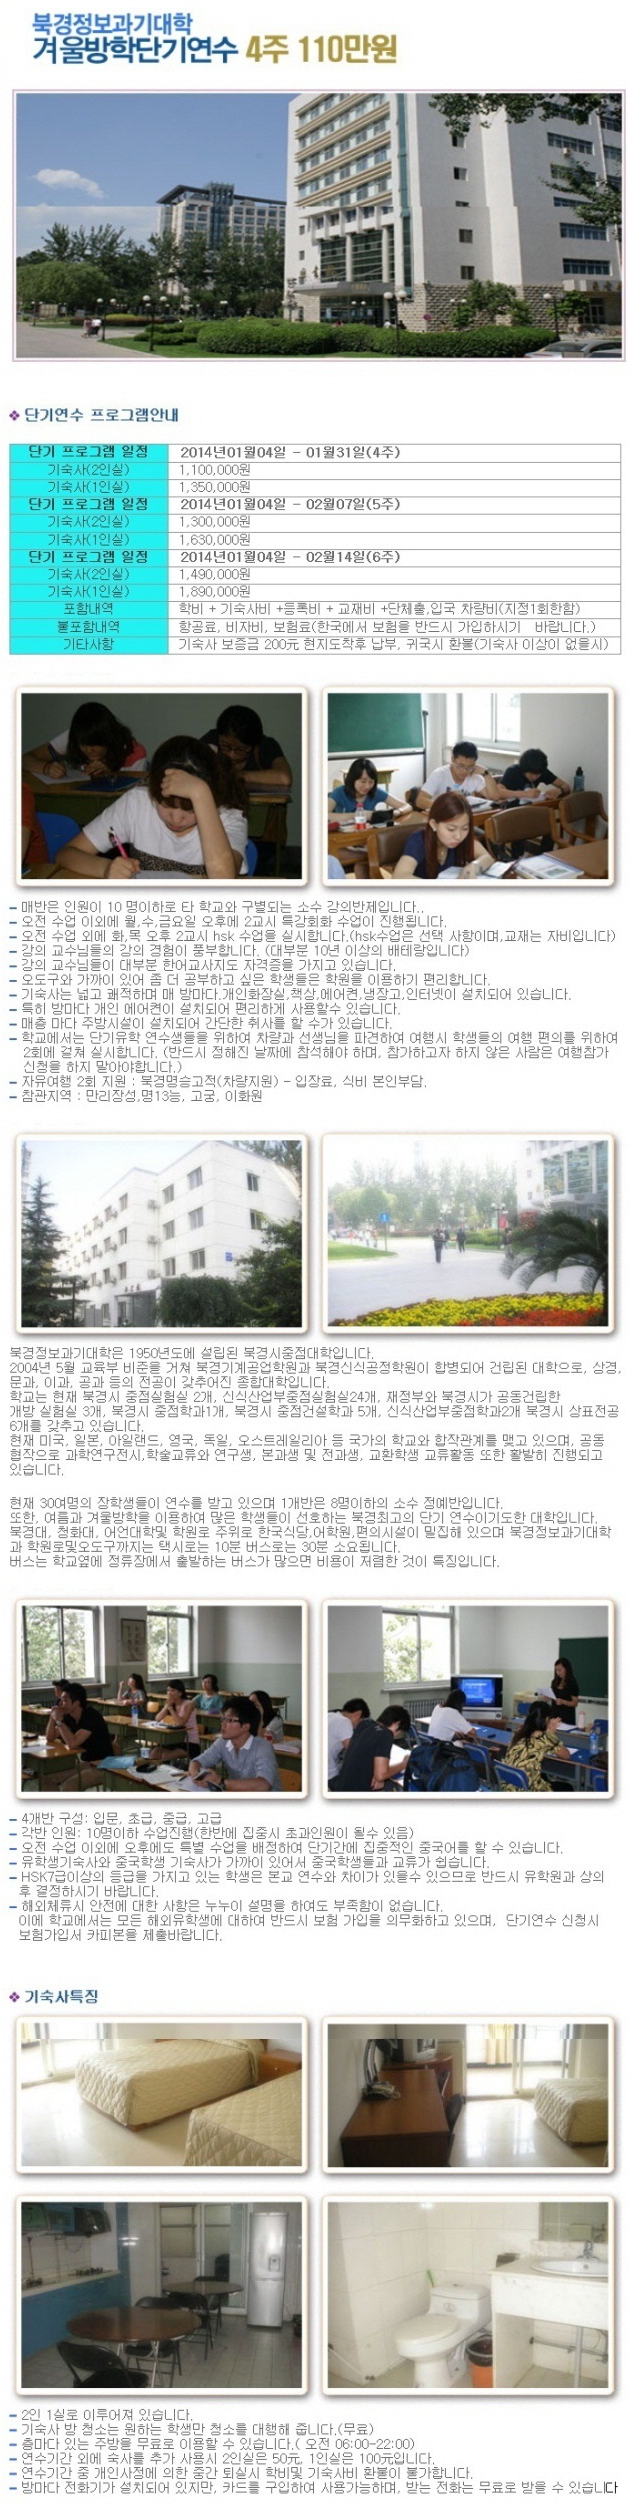 2013년 북경과기대학 겨울방학 단기연수.jpg